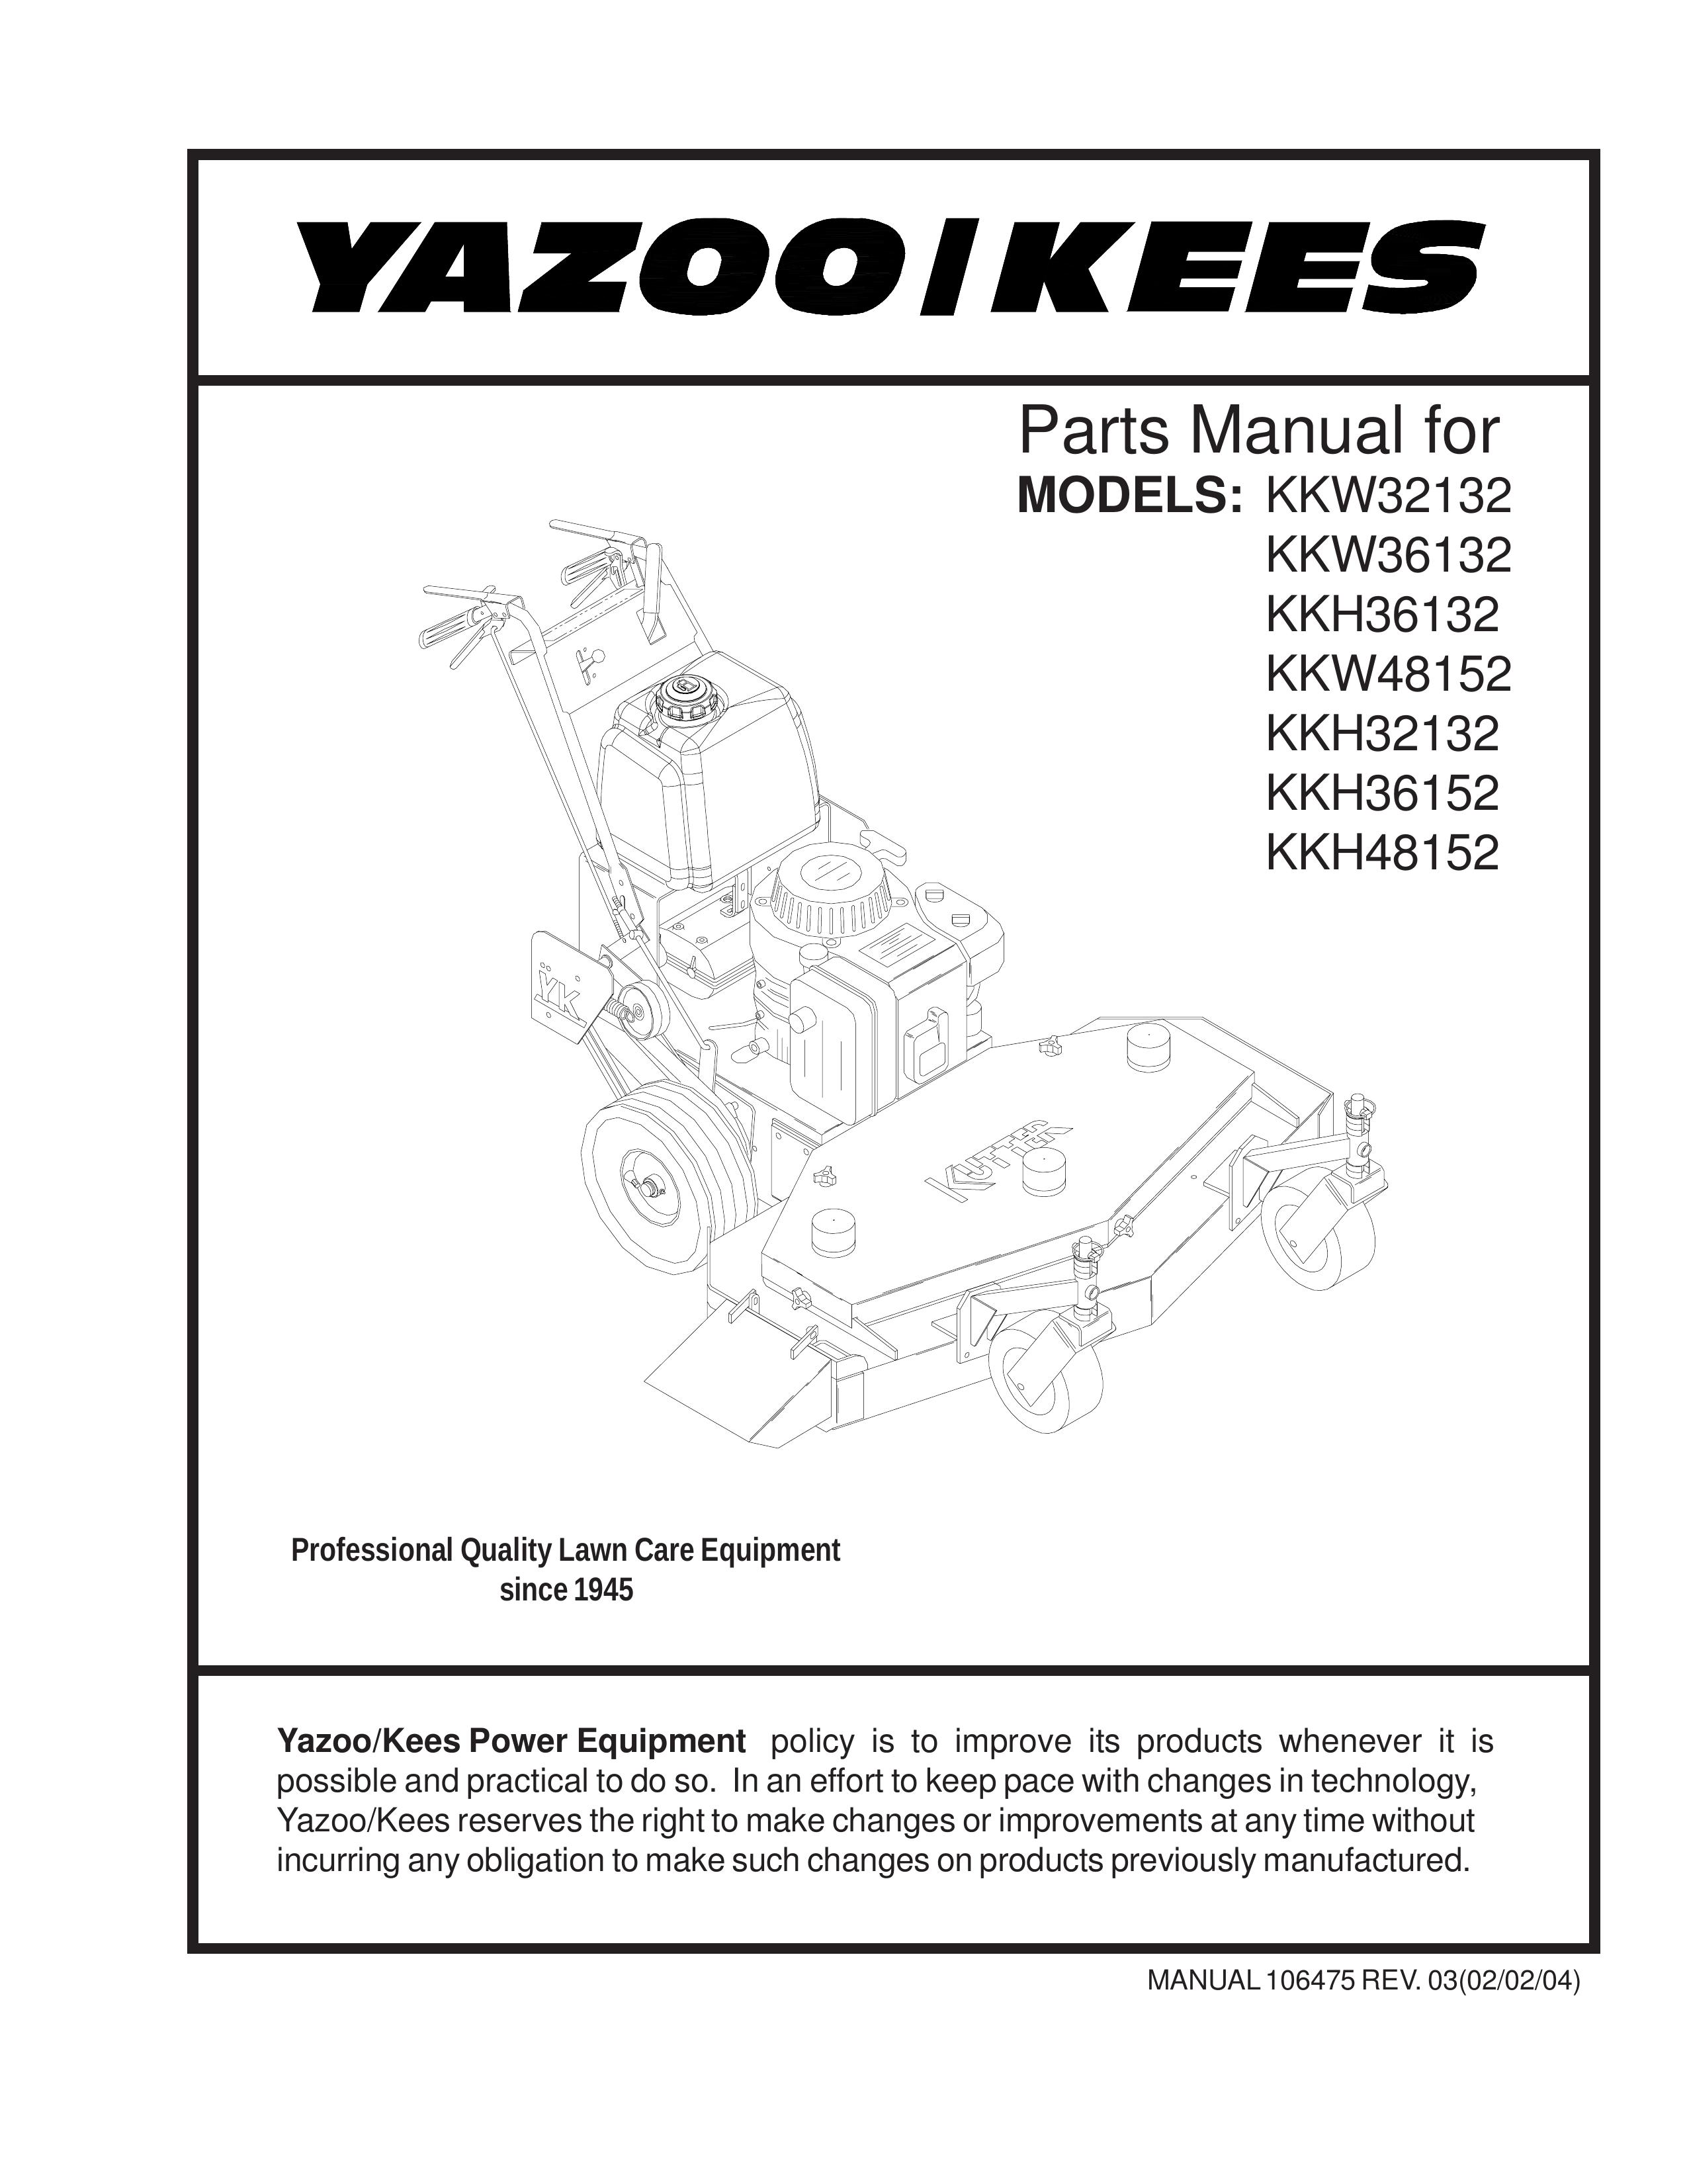 Yazoo/Kees KKW36132 Lawn Mower User Manual